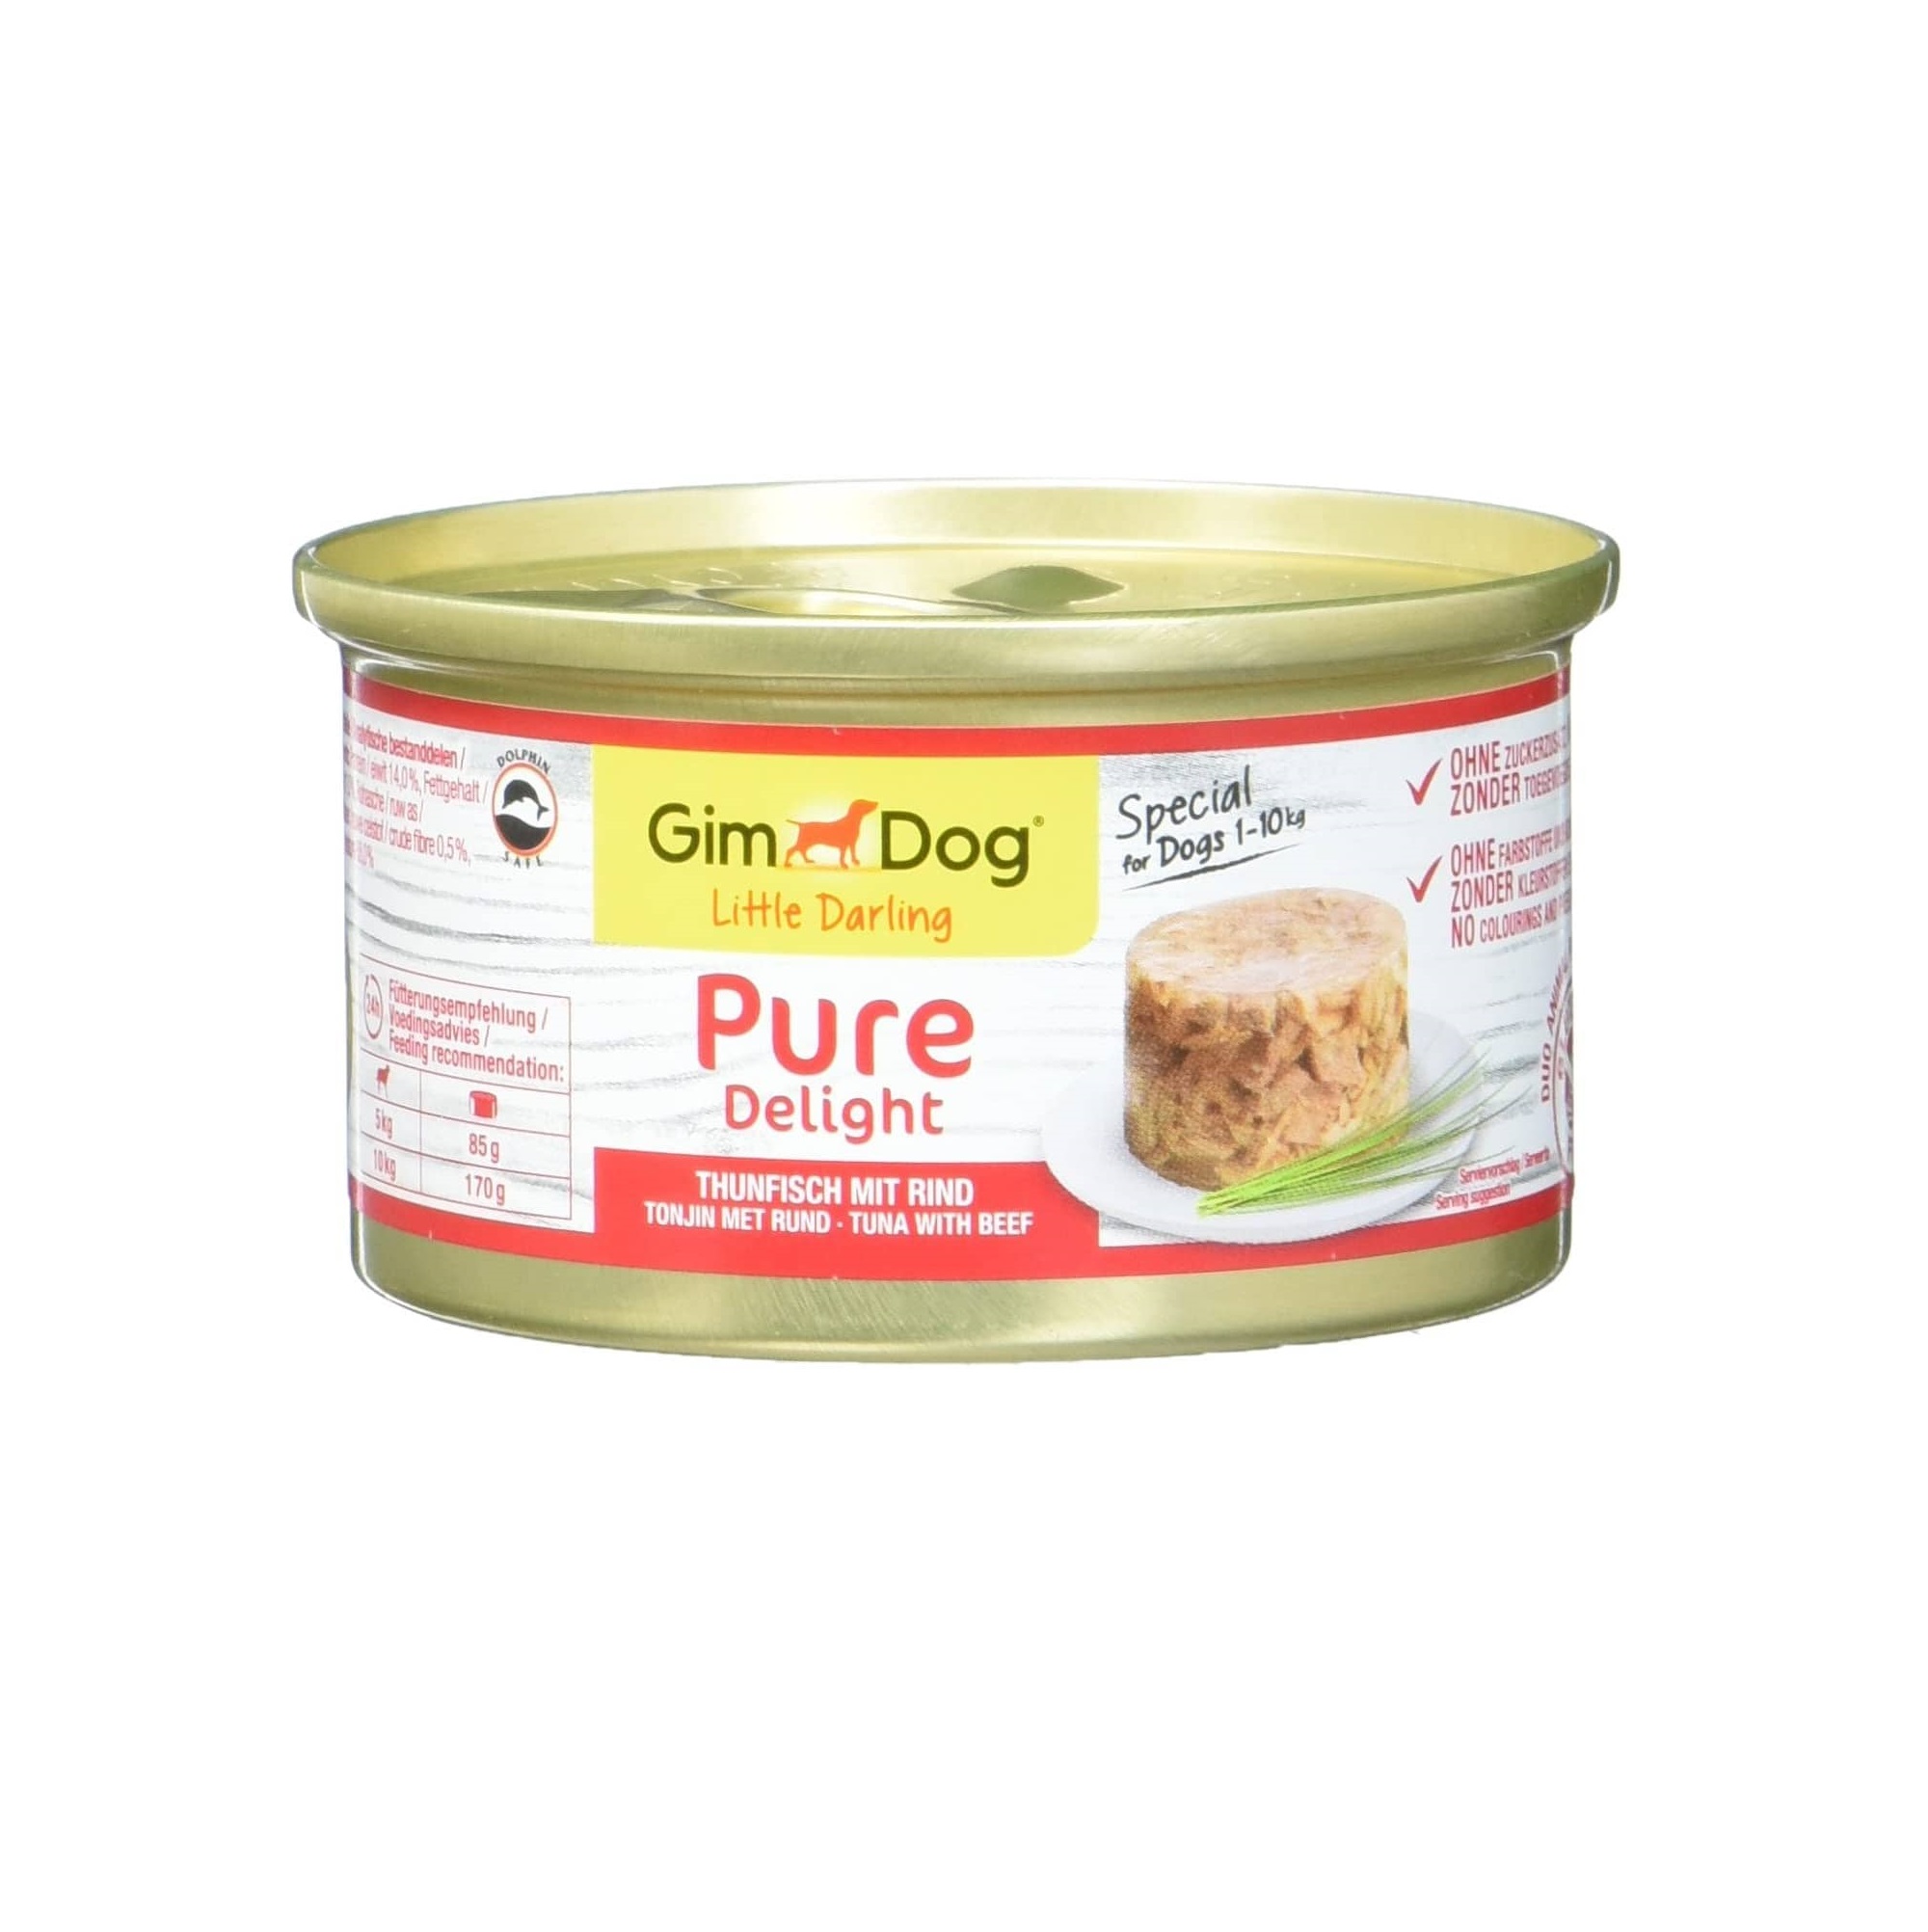 GimDog-Pure-Delight-atun-con-vacuno-Snack-para-perros-rico-en-proteinas-con-pescado-tierno-en-deliciosa-gelatina-12-latas (1)